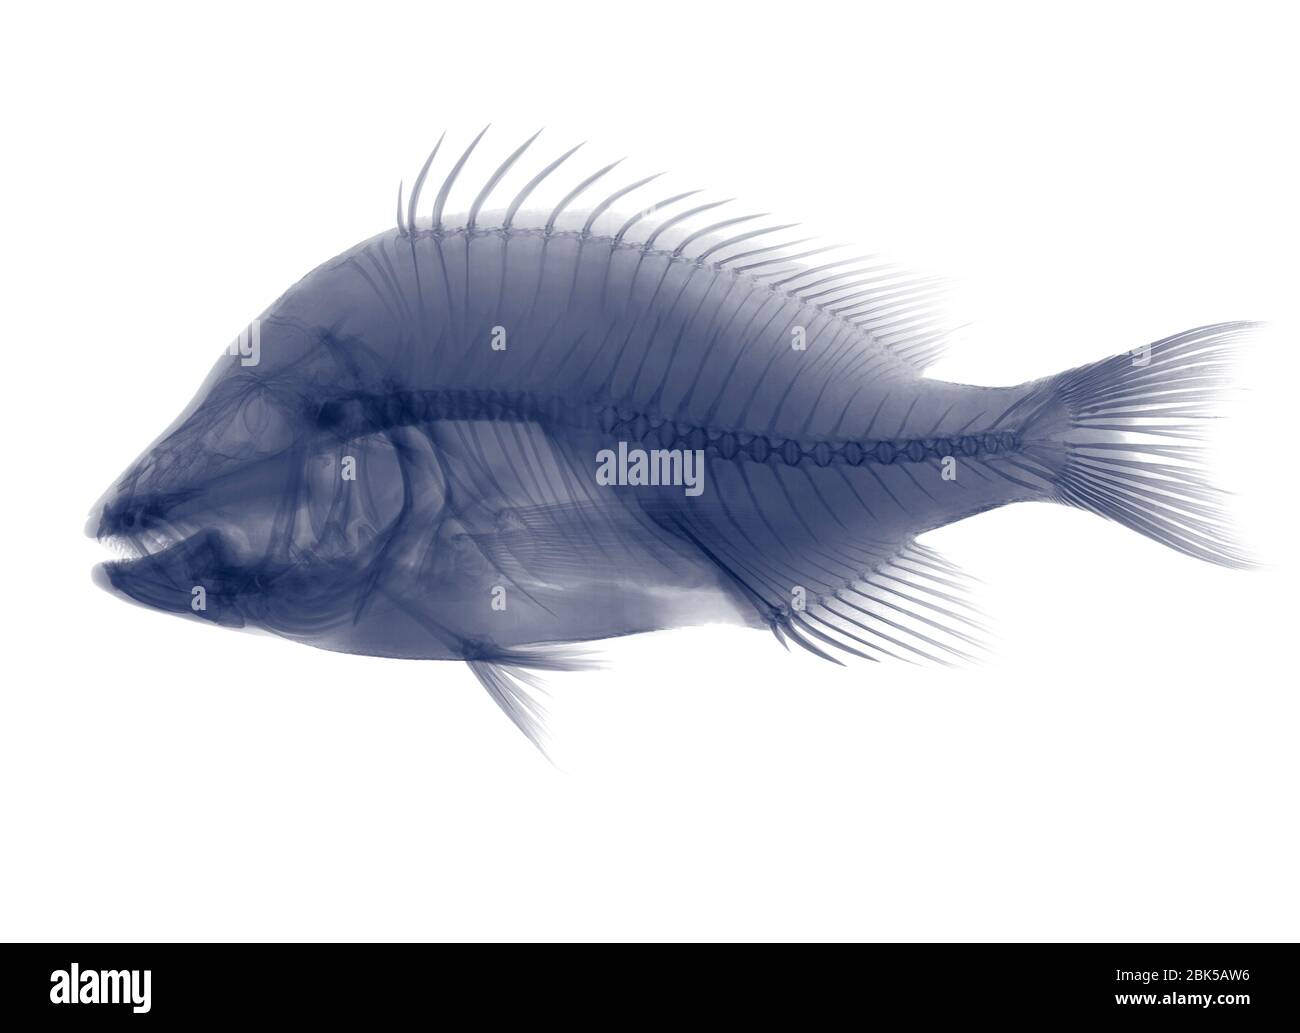 Tilapia fish, X-ray. Stock Photo